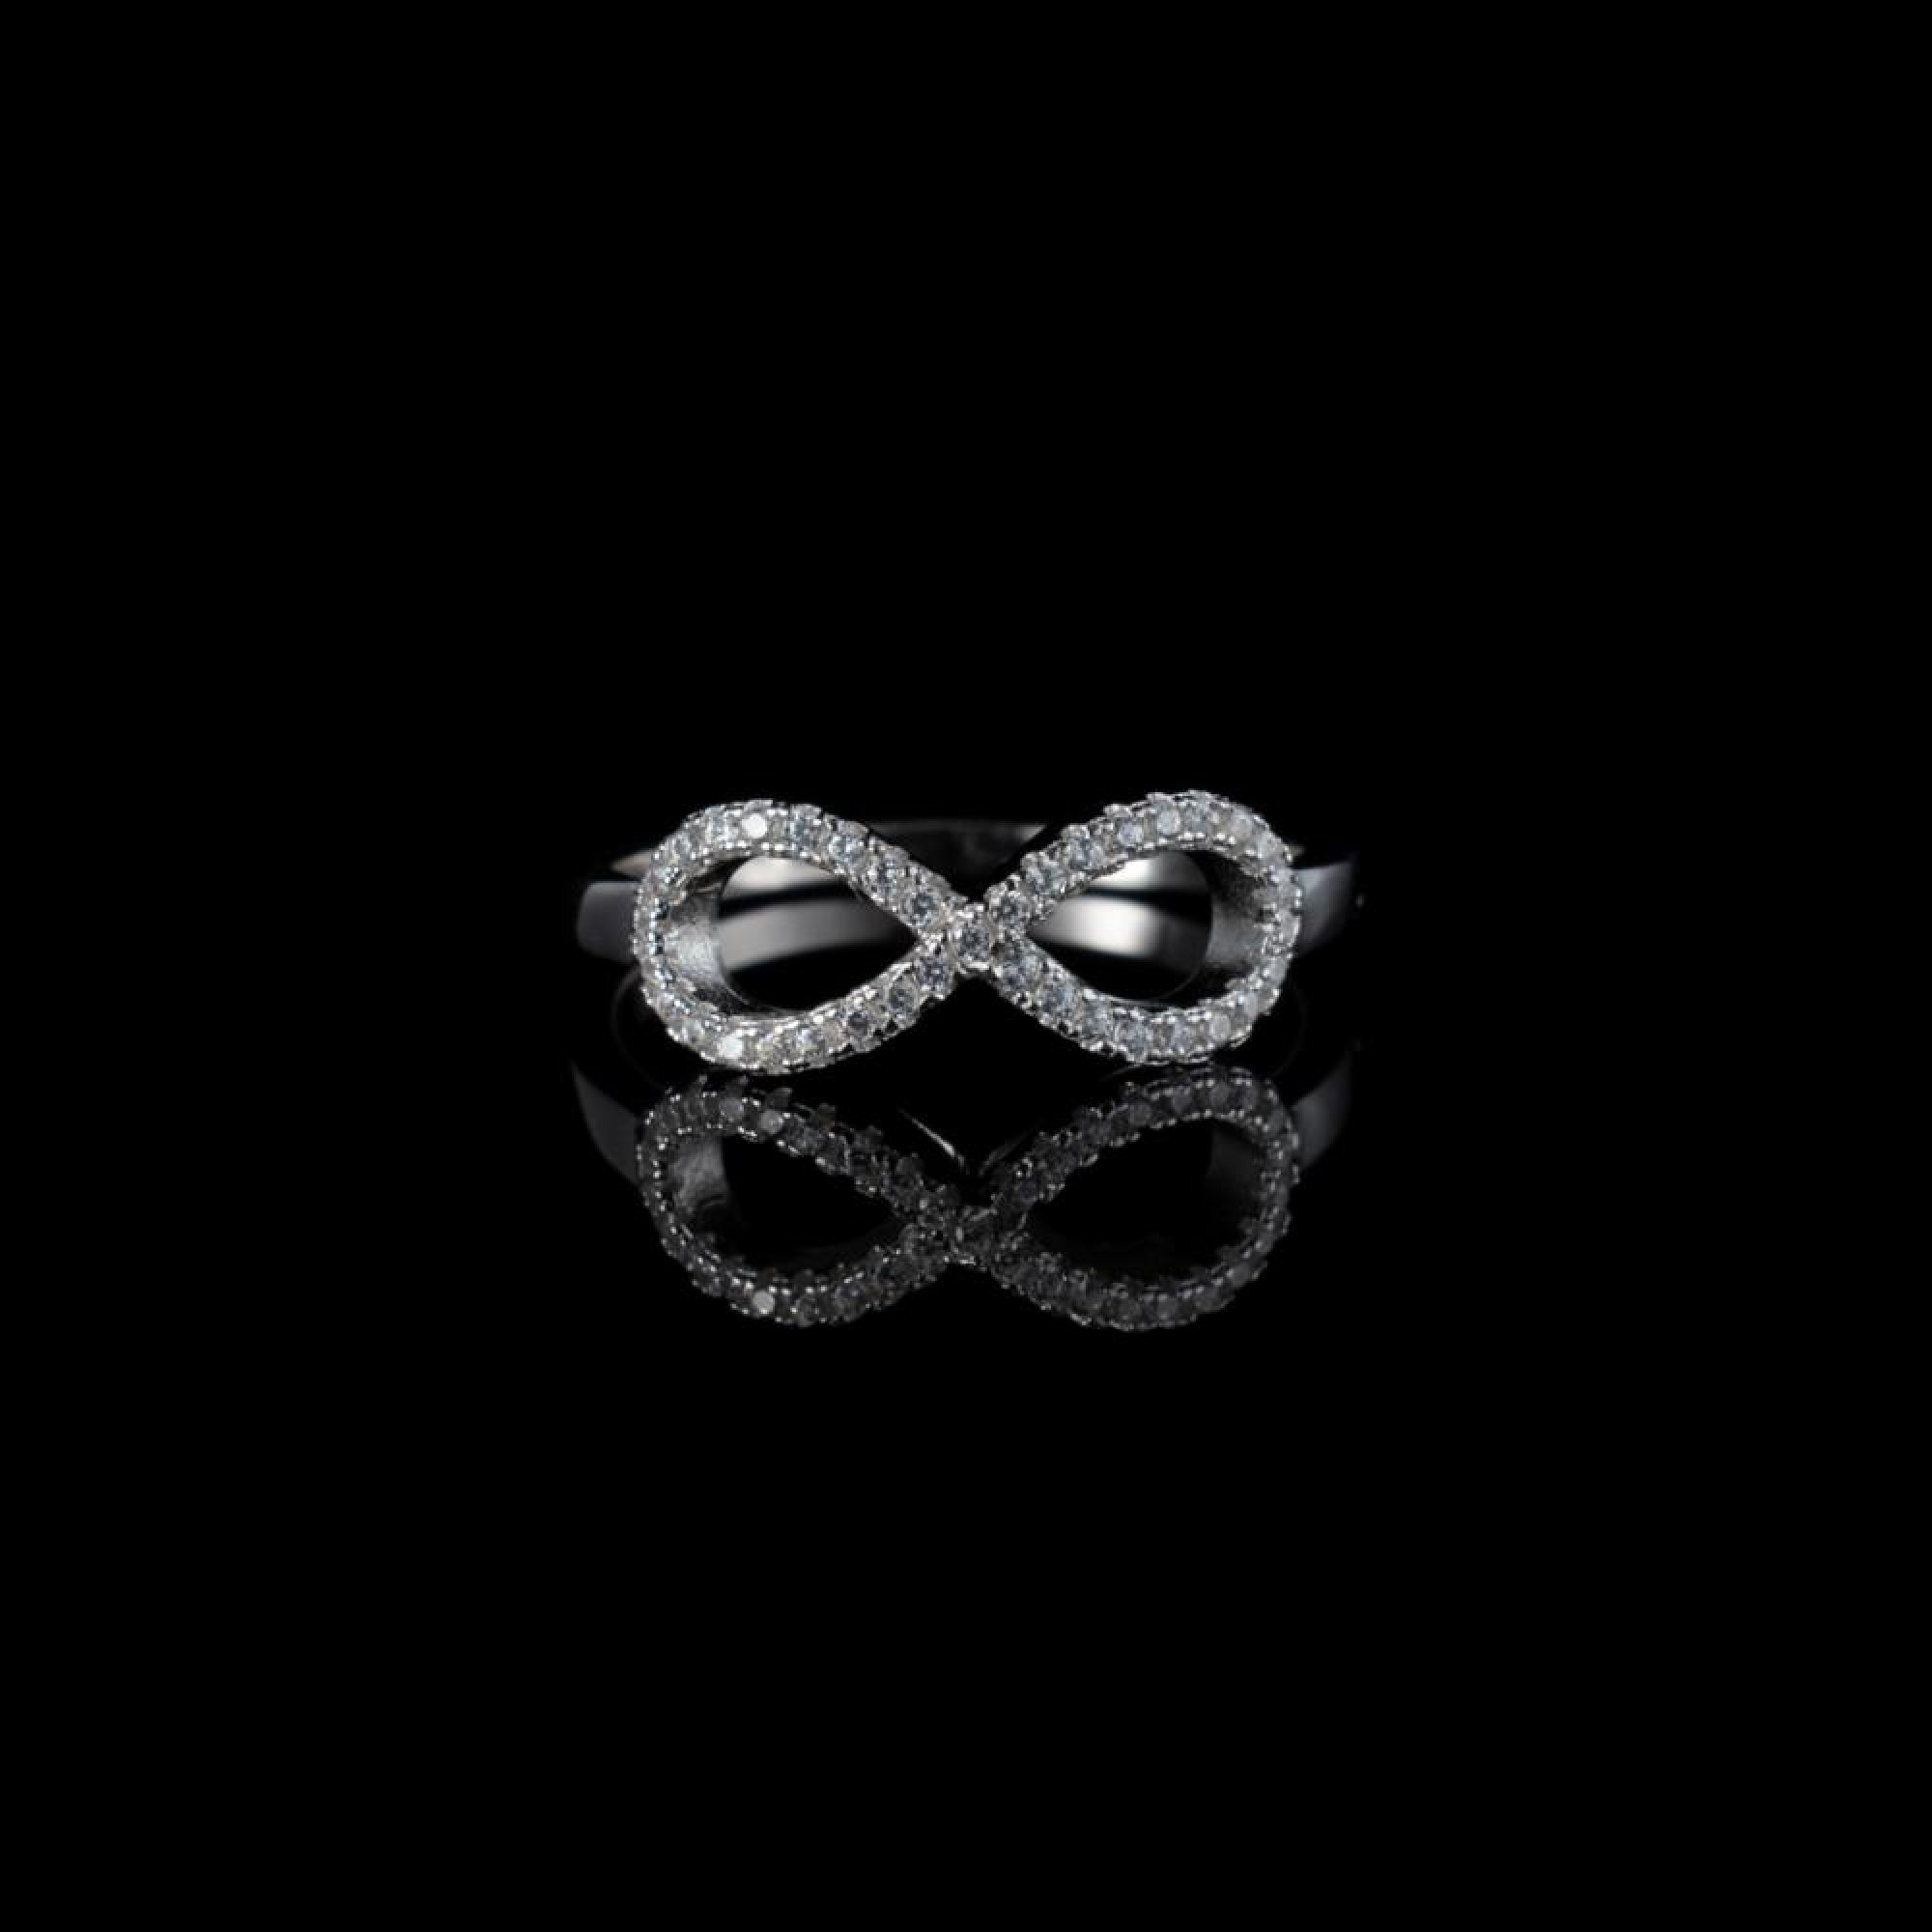 Infinity ring with zircon stones